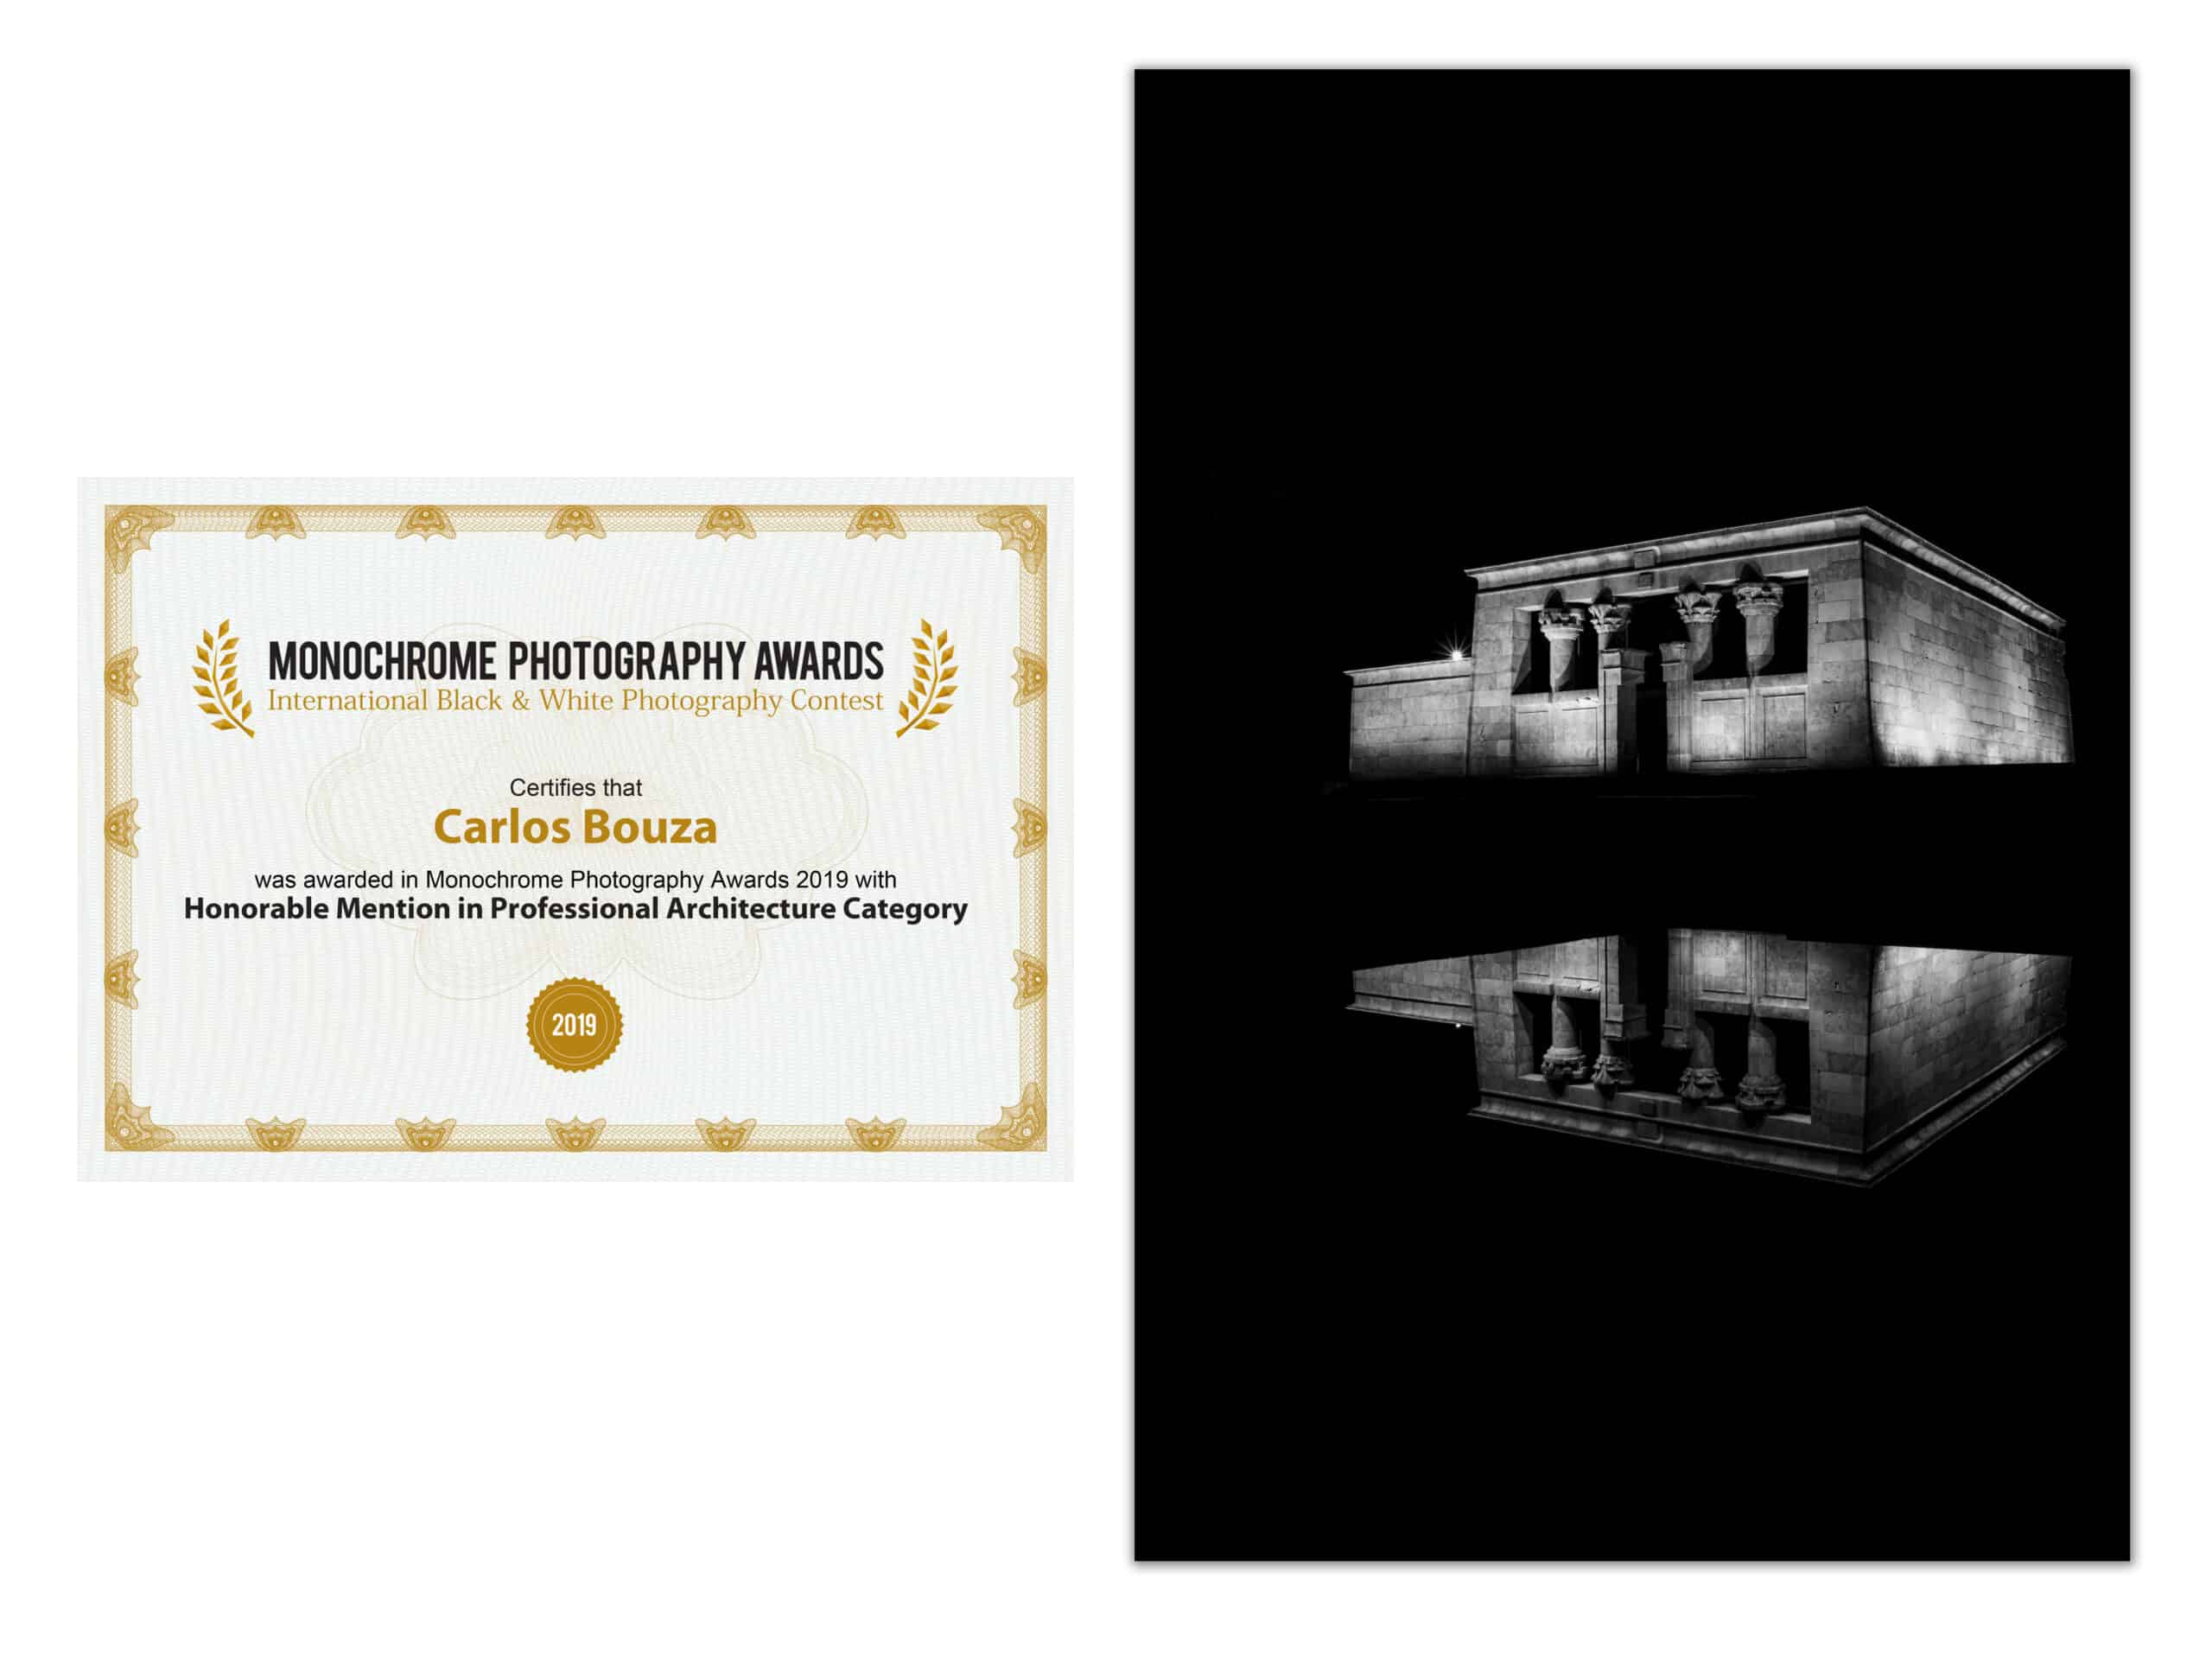 Templo de Debod ha recibido una Mención de Honor en los Monochrome Awards de 2019